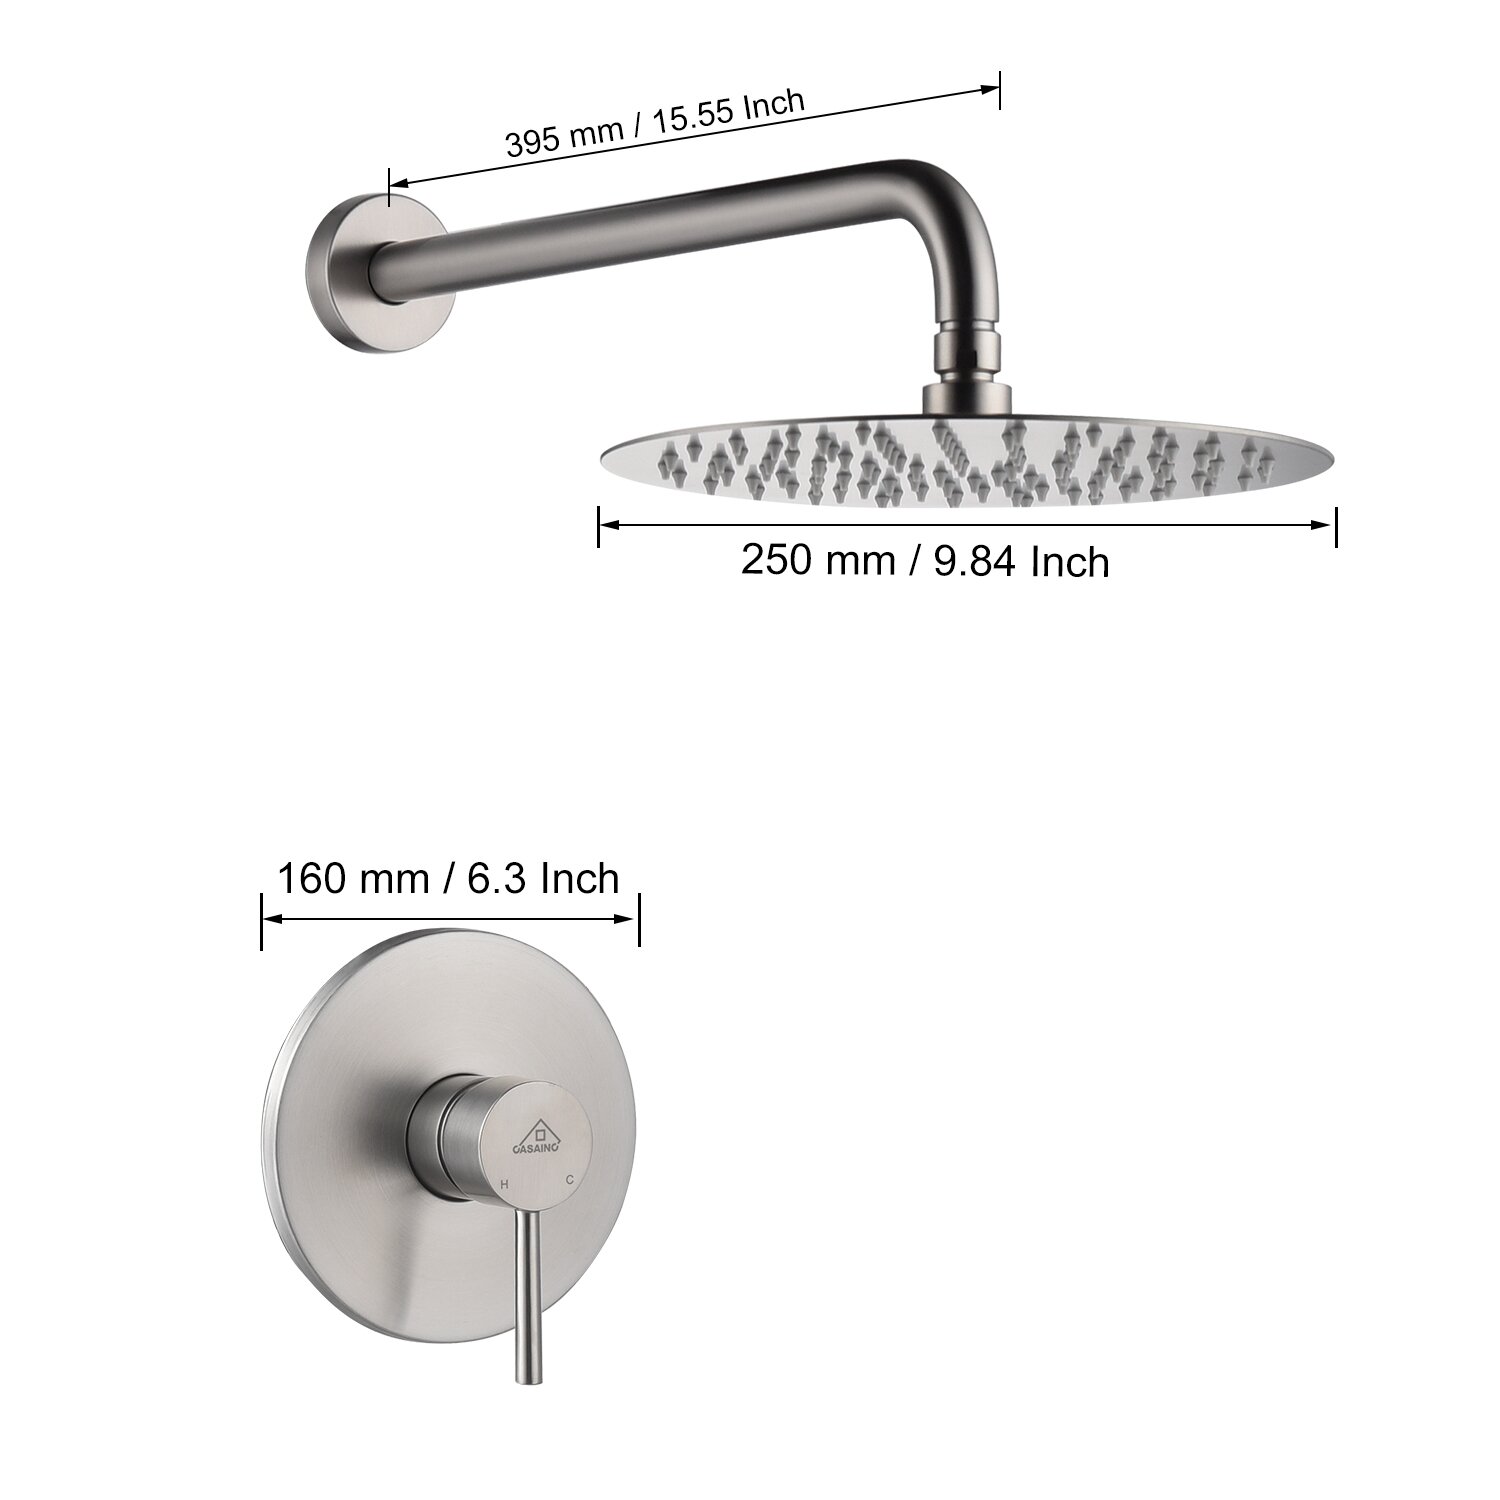 حوض استحمام متوازن الضغط على الحائط من Aquacubic ونظام دش مع صمام خشن